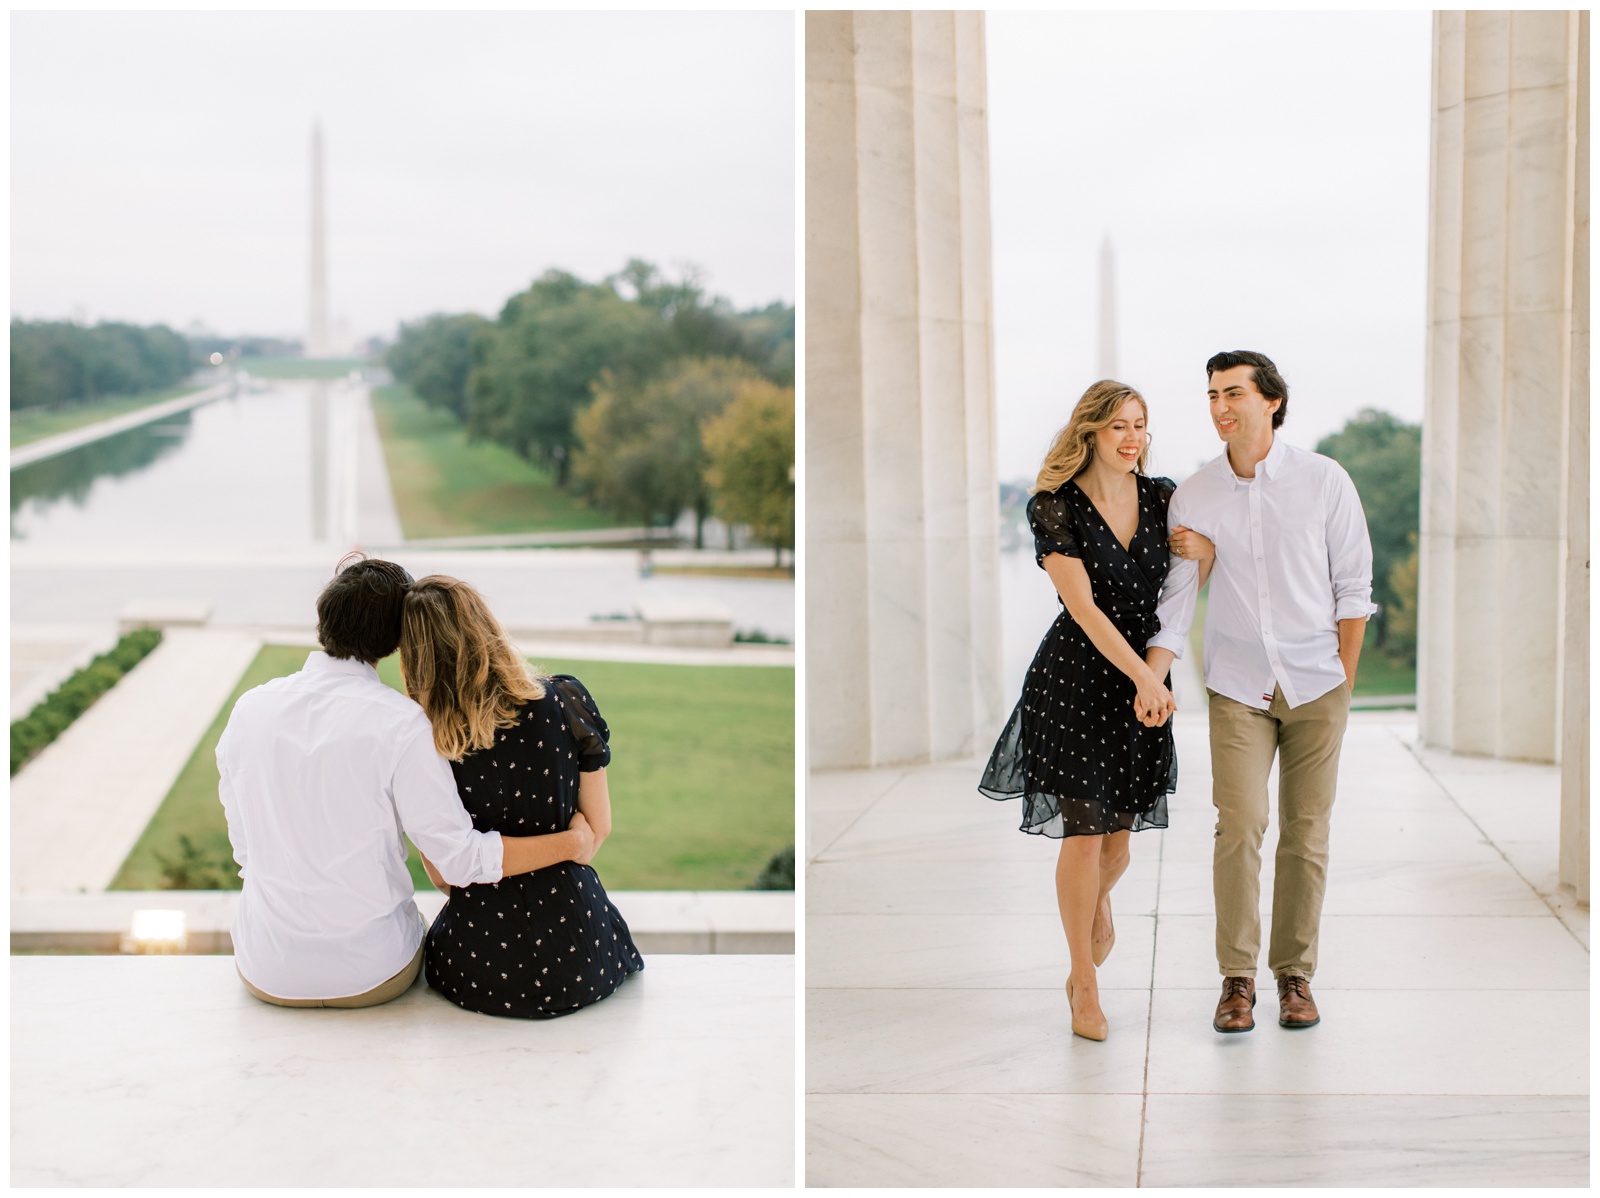 National Mall Engagement Session - Washington, DC Engagement Photographer - Neva Sullivan Photography_0008.jpg